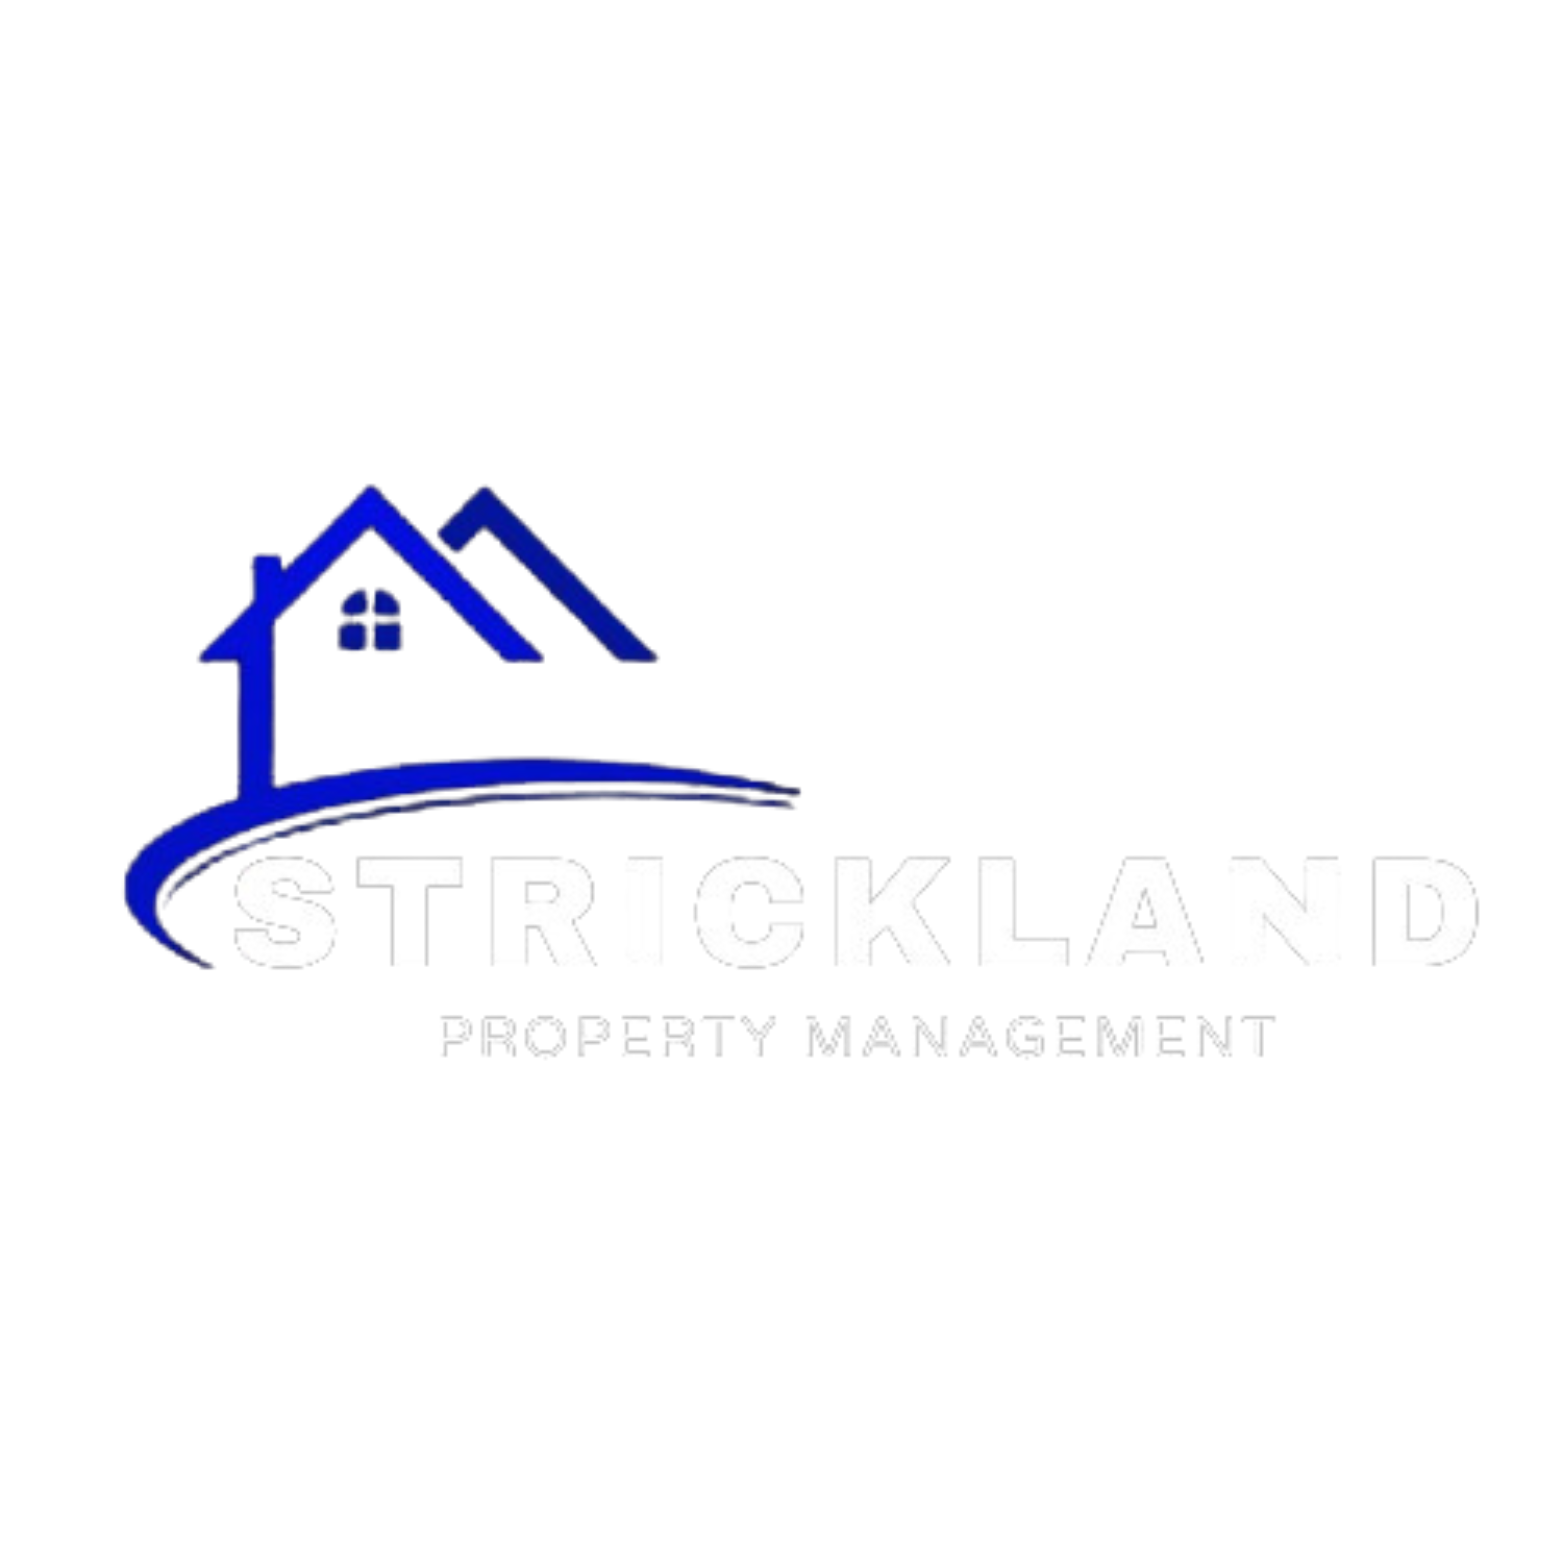 Strickland Property Management